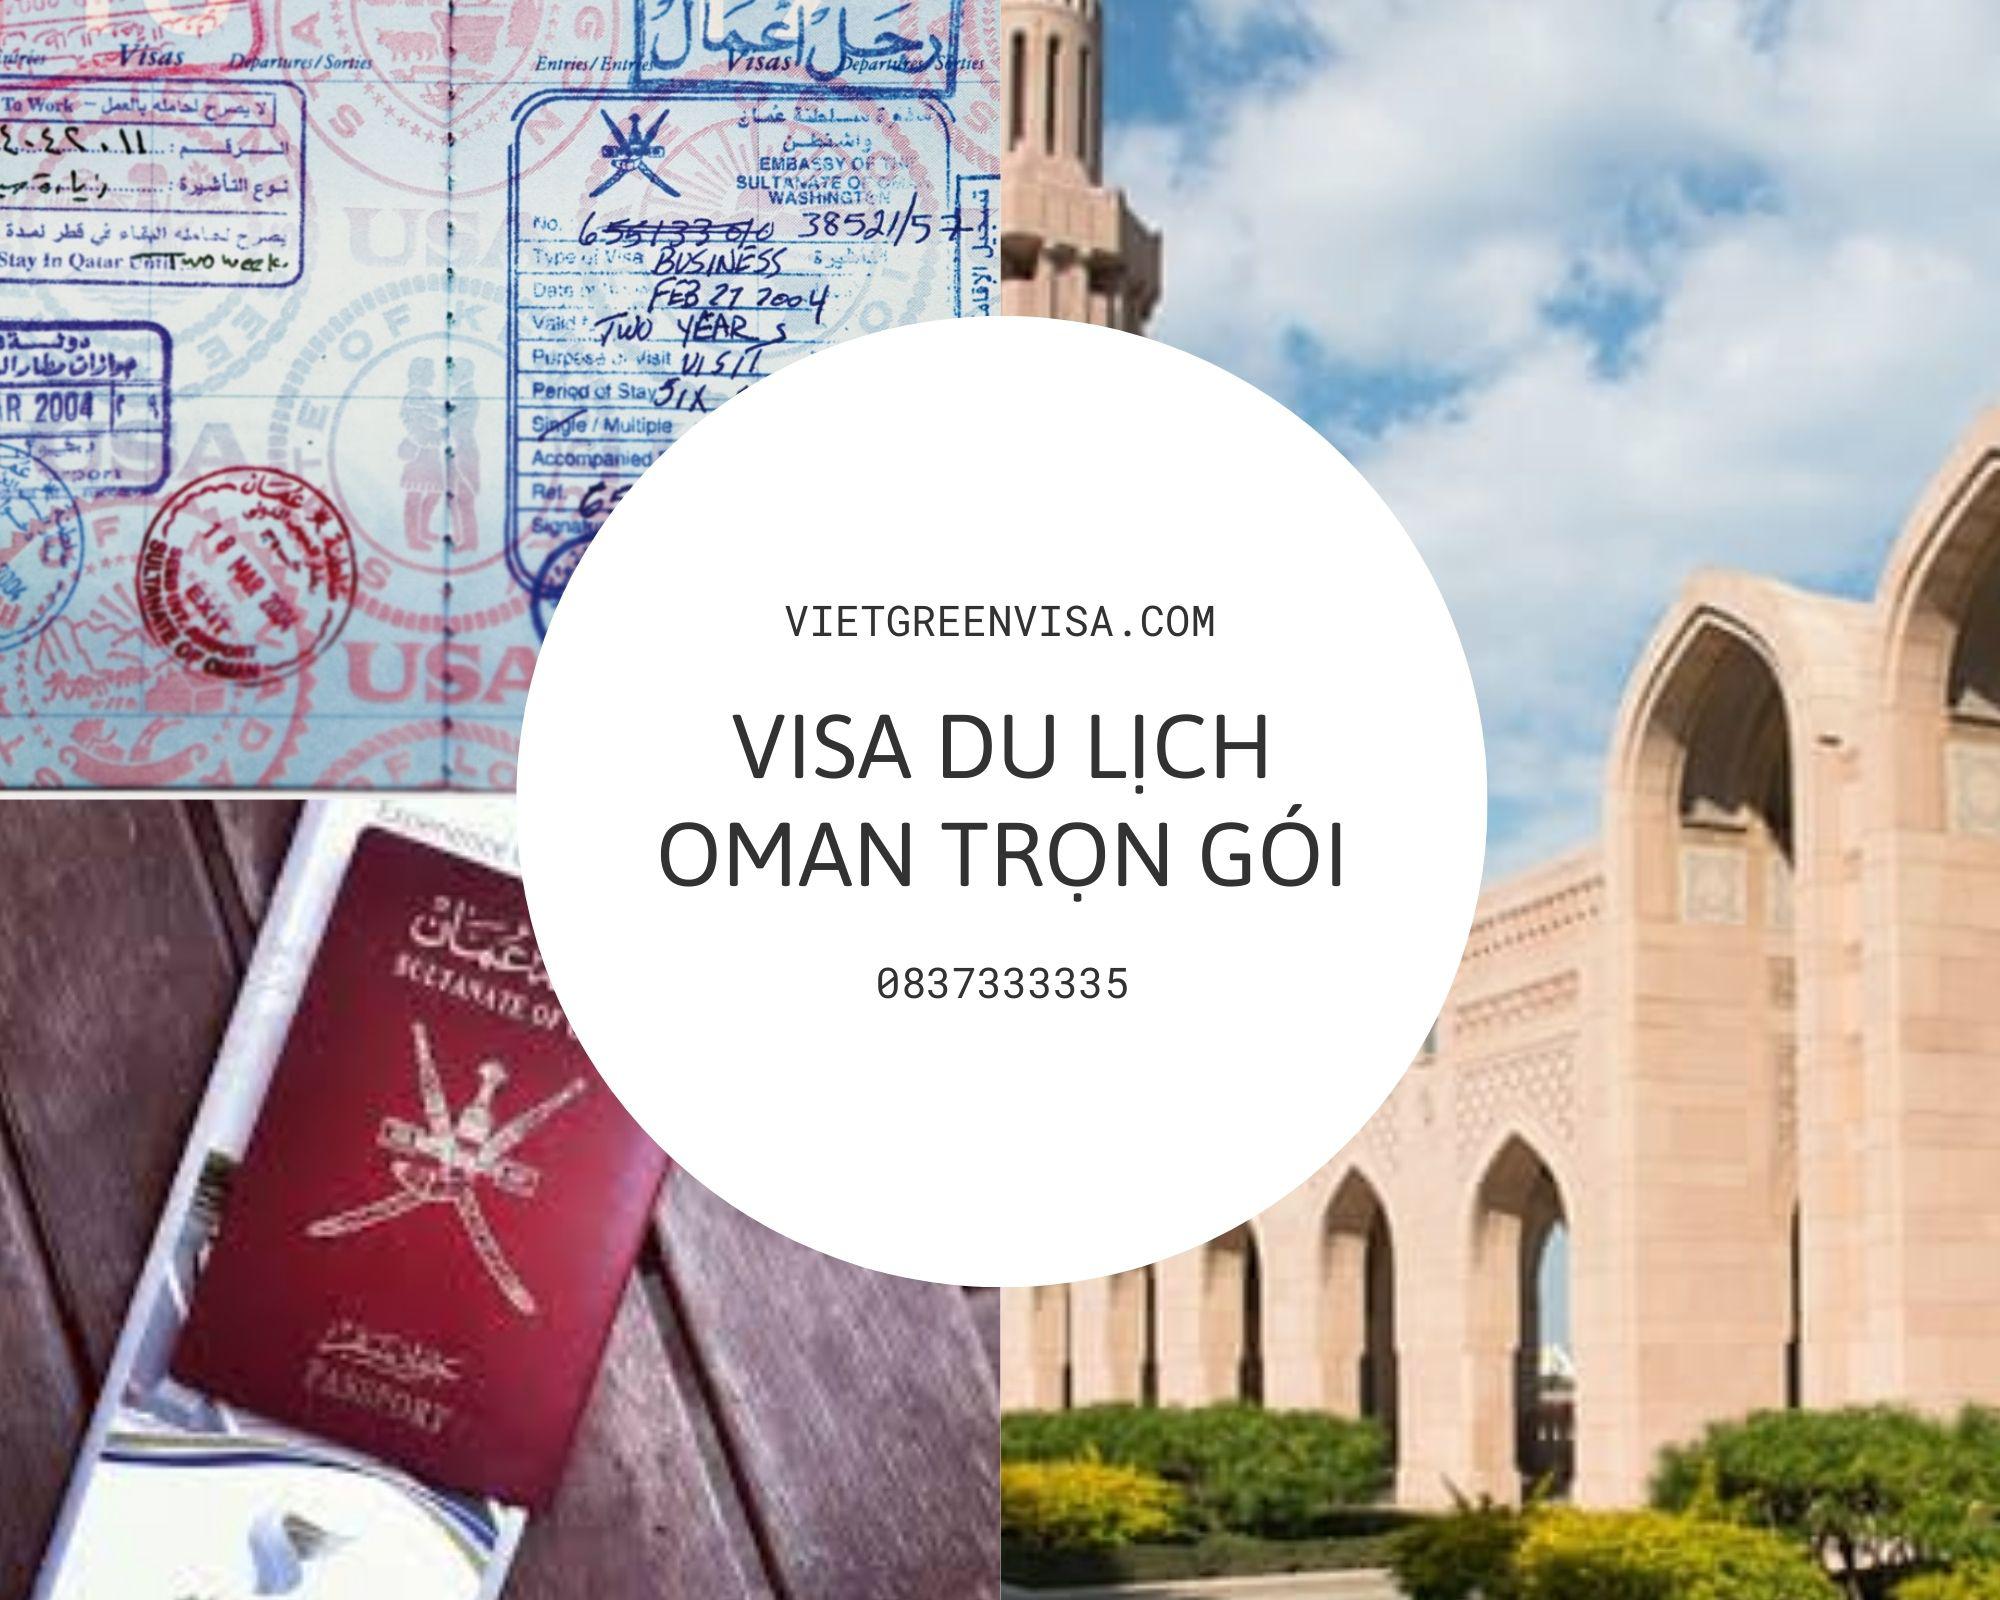 Dịch vụ làm visa Oman du lịch 14 ngày - Bao đậu